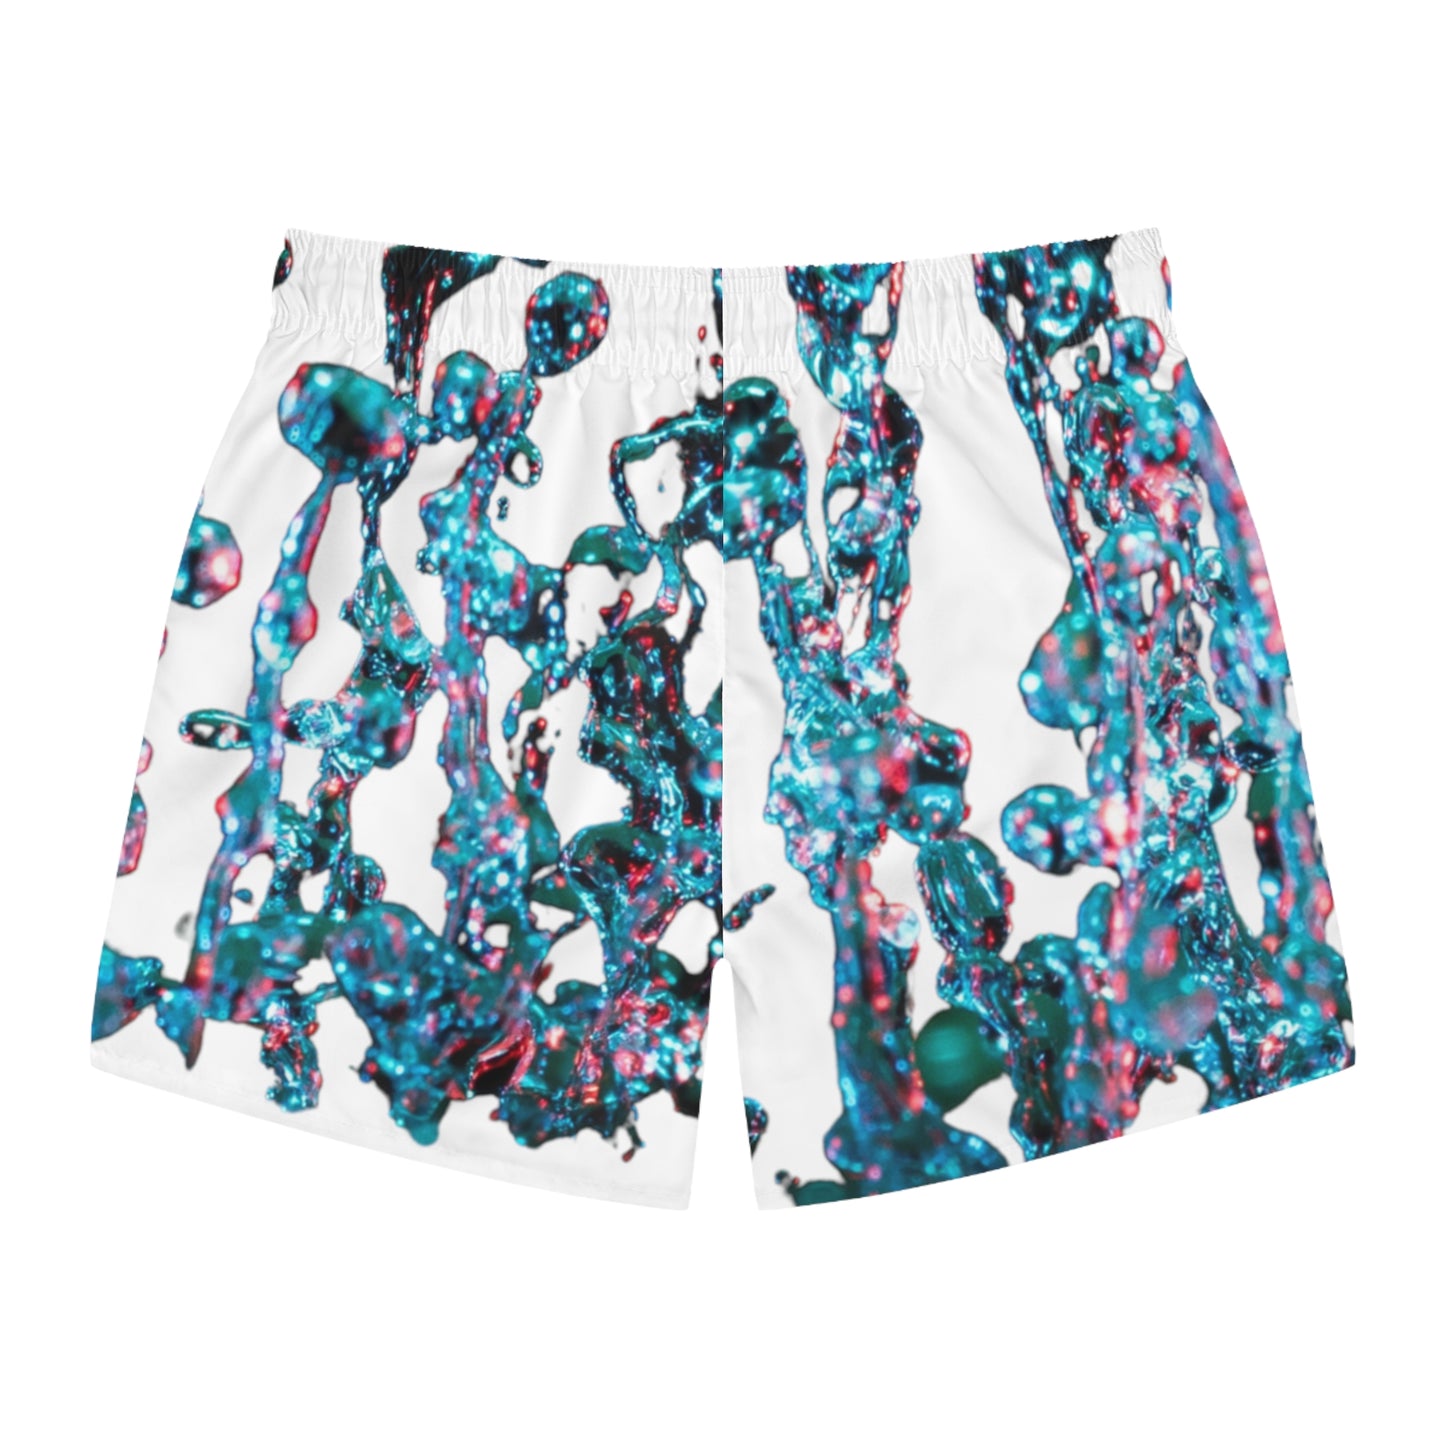 AquaVenture Coastal Shorts"